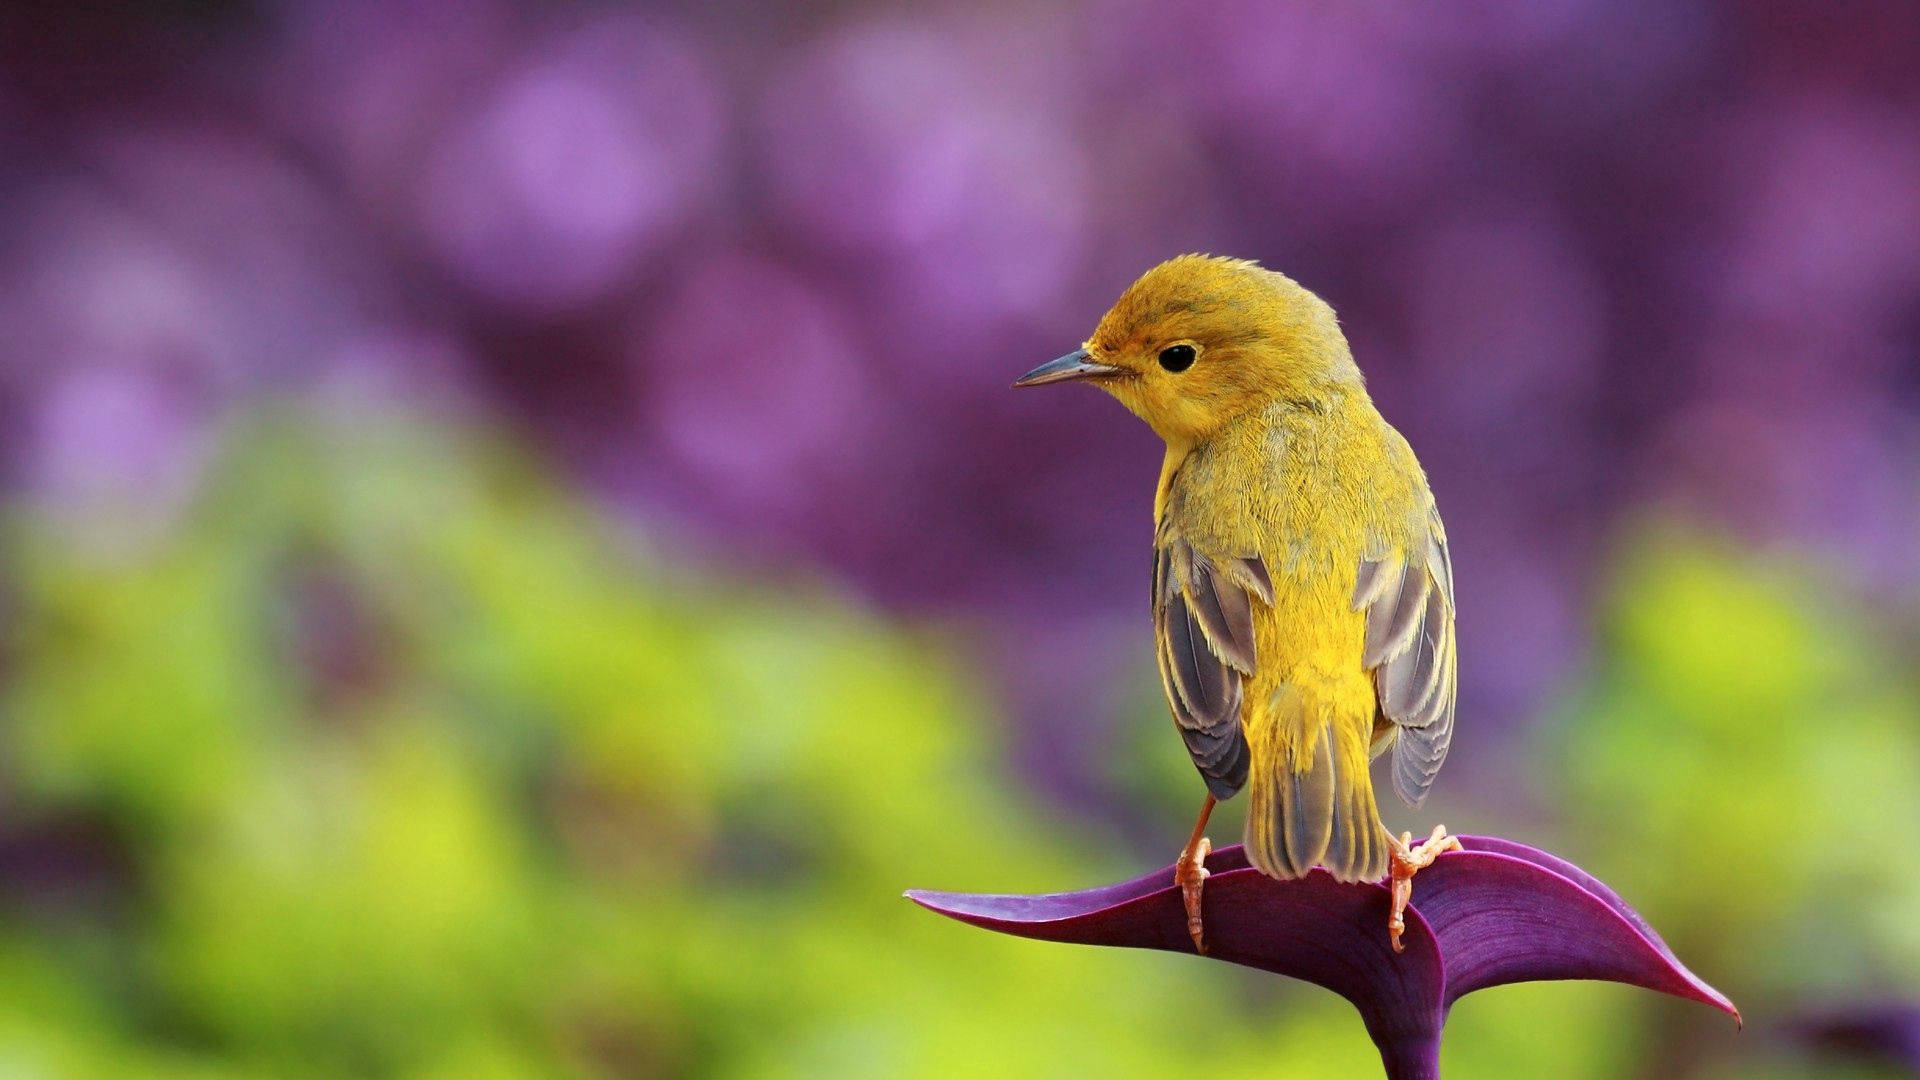 Pretty Canary Bird Photo Background